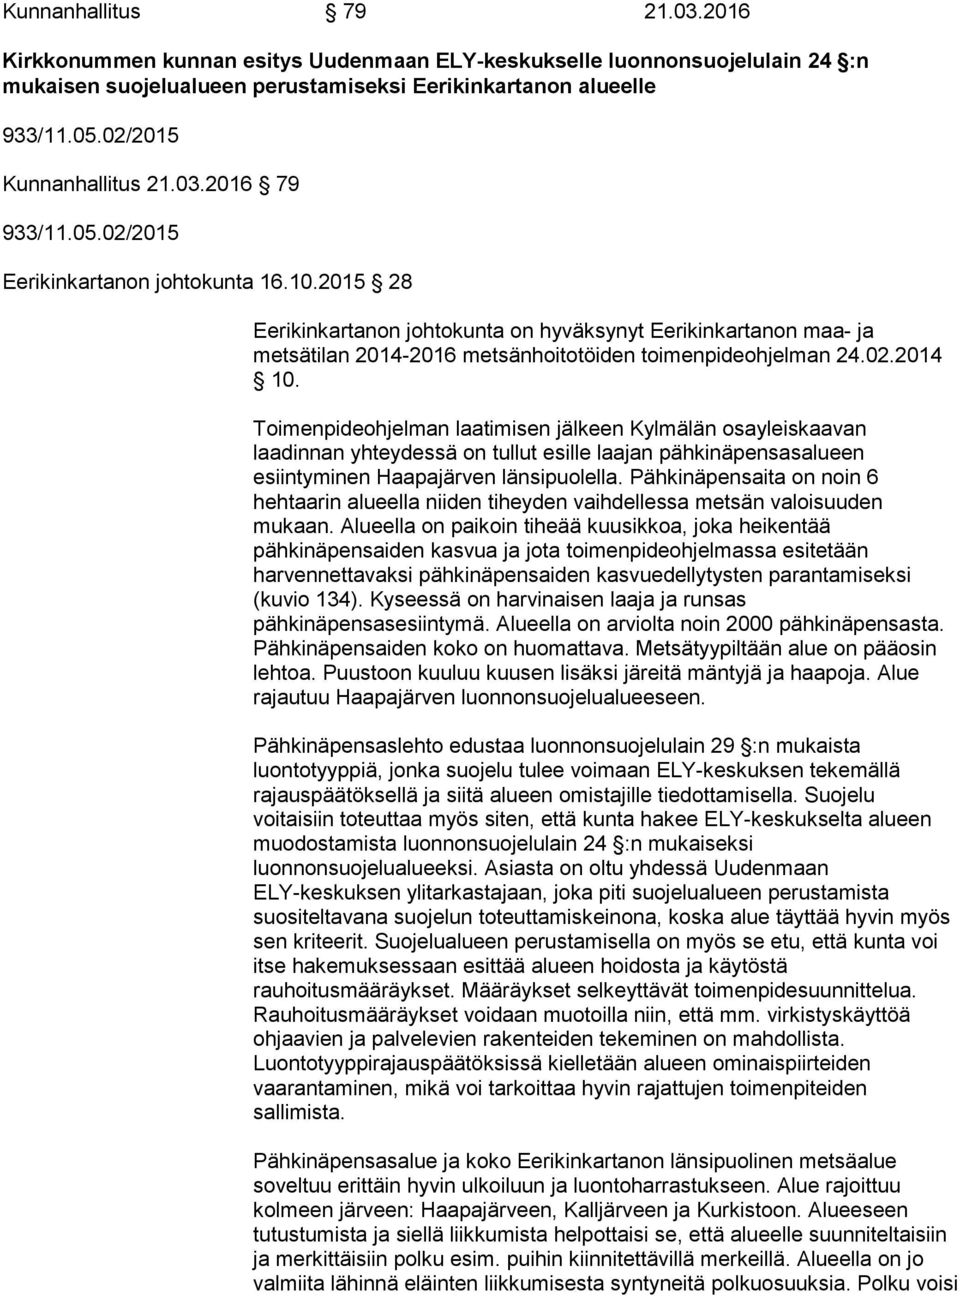 2015 28 Eerikinkartanon johtokunta on hyväksynyt Eerikinkartanon maa- ja metsätilan 2014-2016 metsänhoitotöiden toimenpideohjelman 24.02.2014 10.